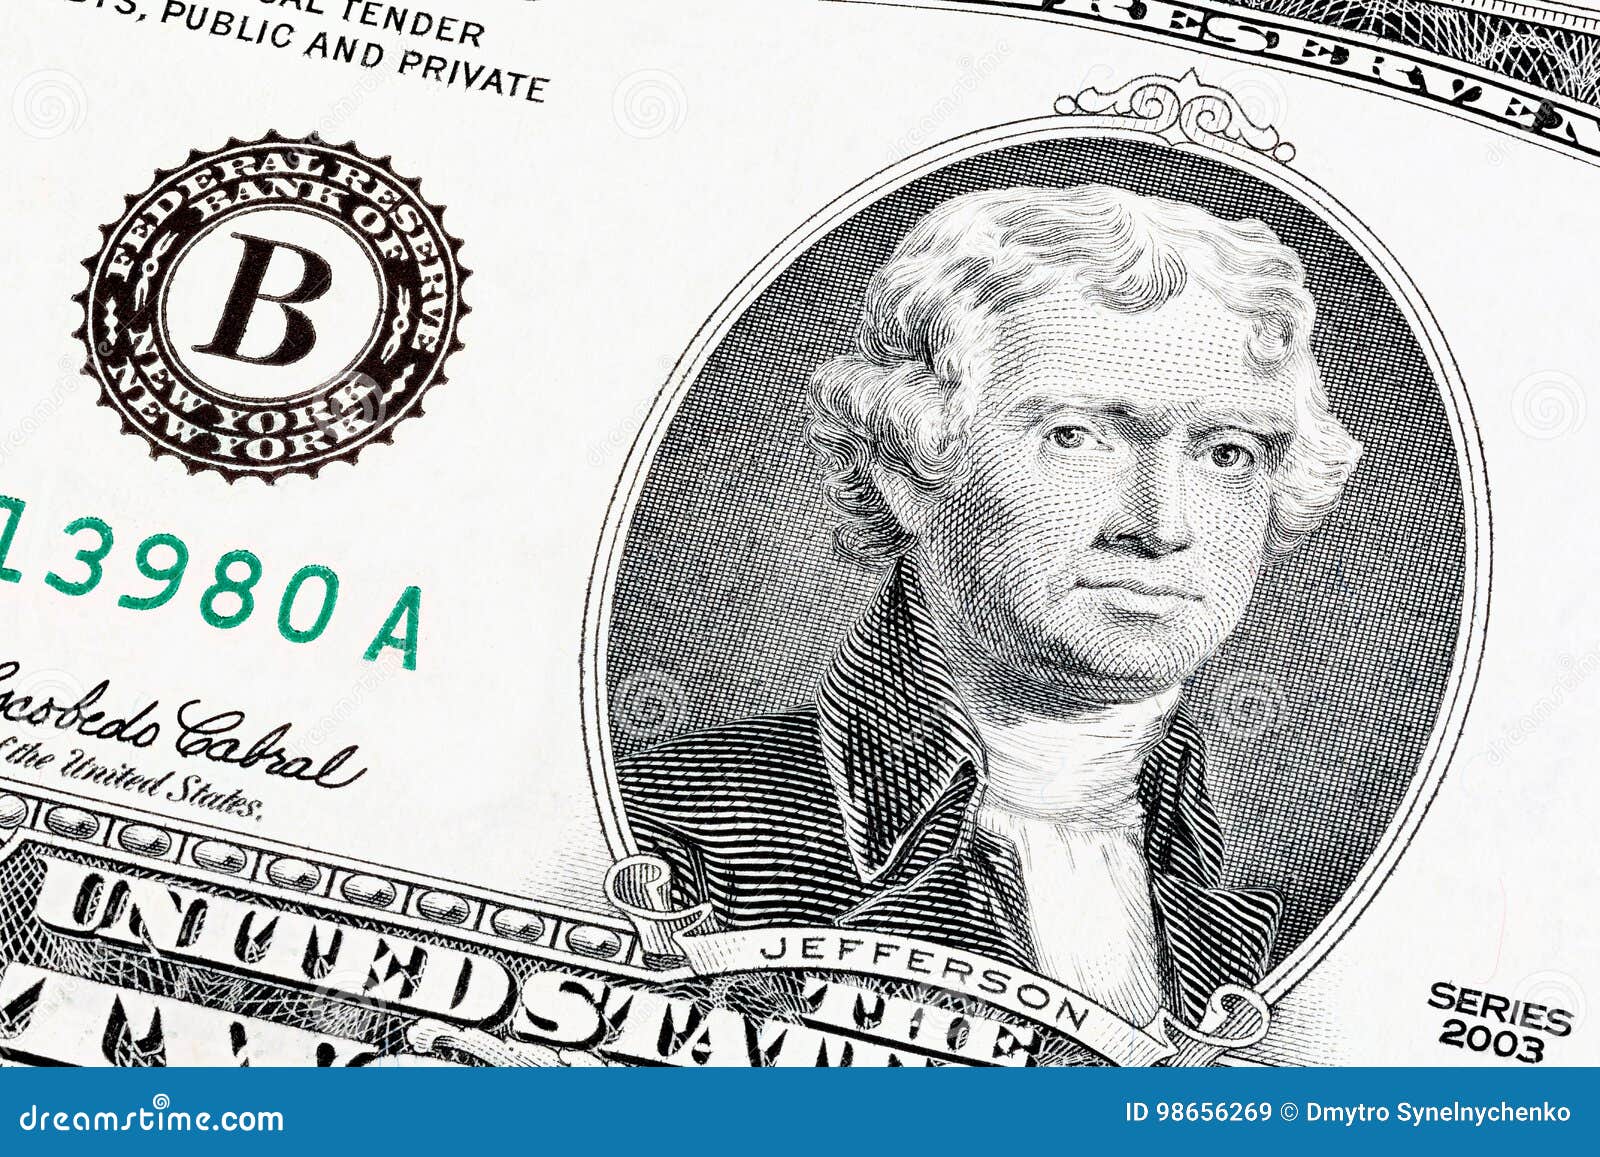 Доллар с портретом Джефферсона. Джефферсон какая банкнота. The end of Print.